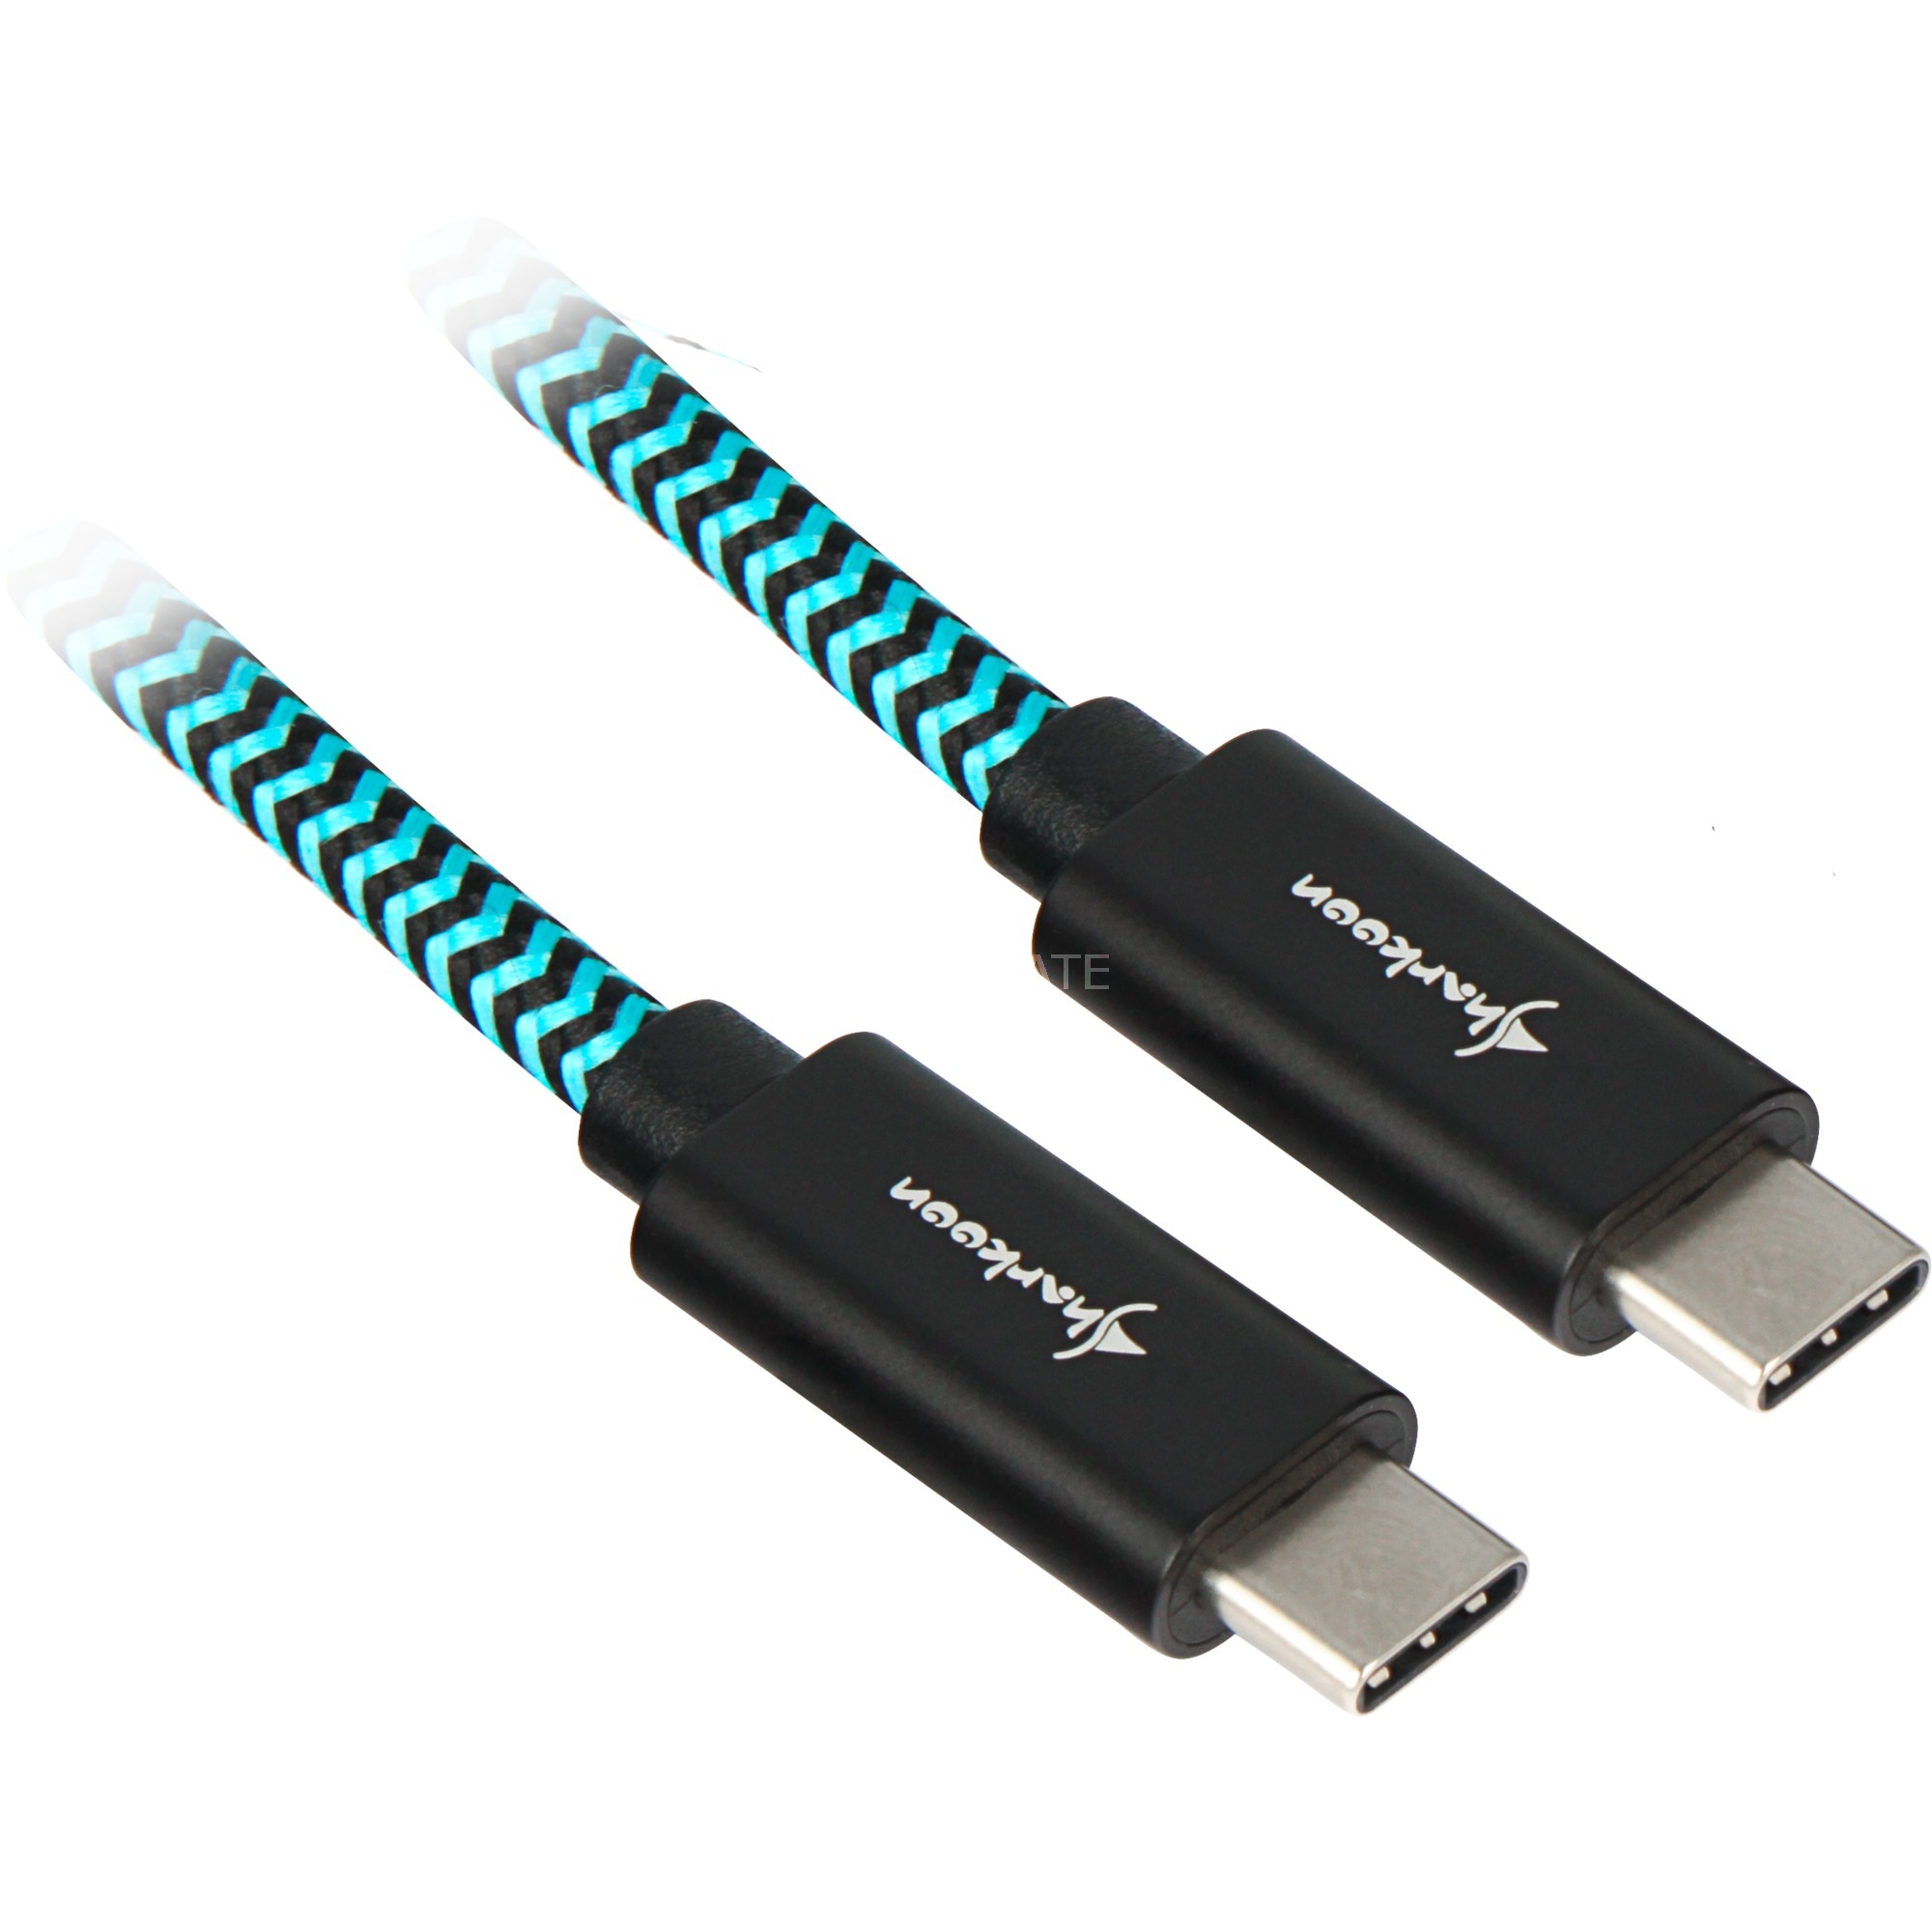 Image of Alternate - Kabel USB-C 3.2 Stecker > USB-C Stecker (Alu + Braid) online einkaufen bei Alternate